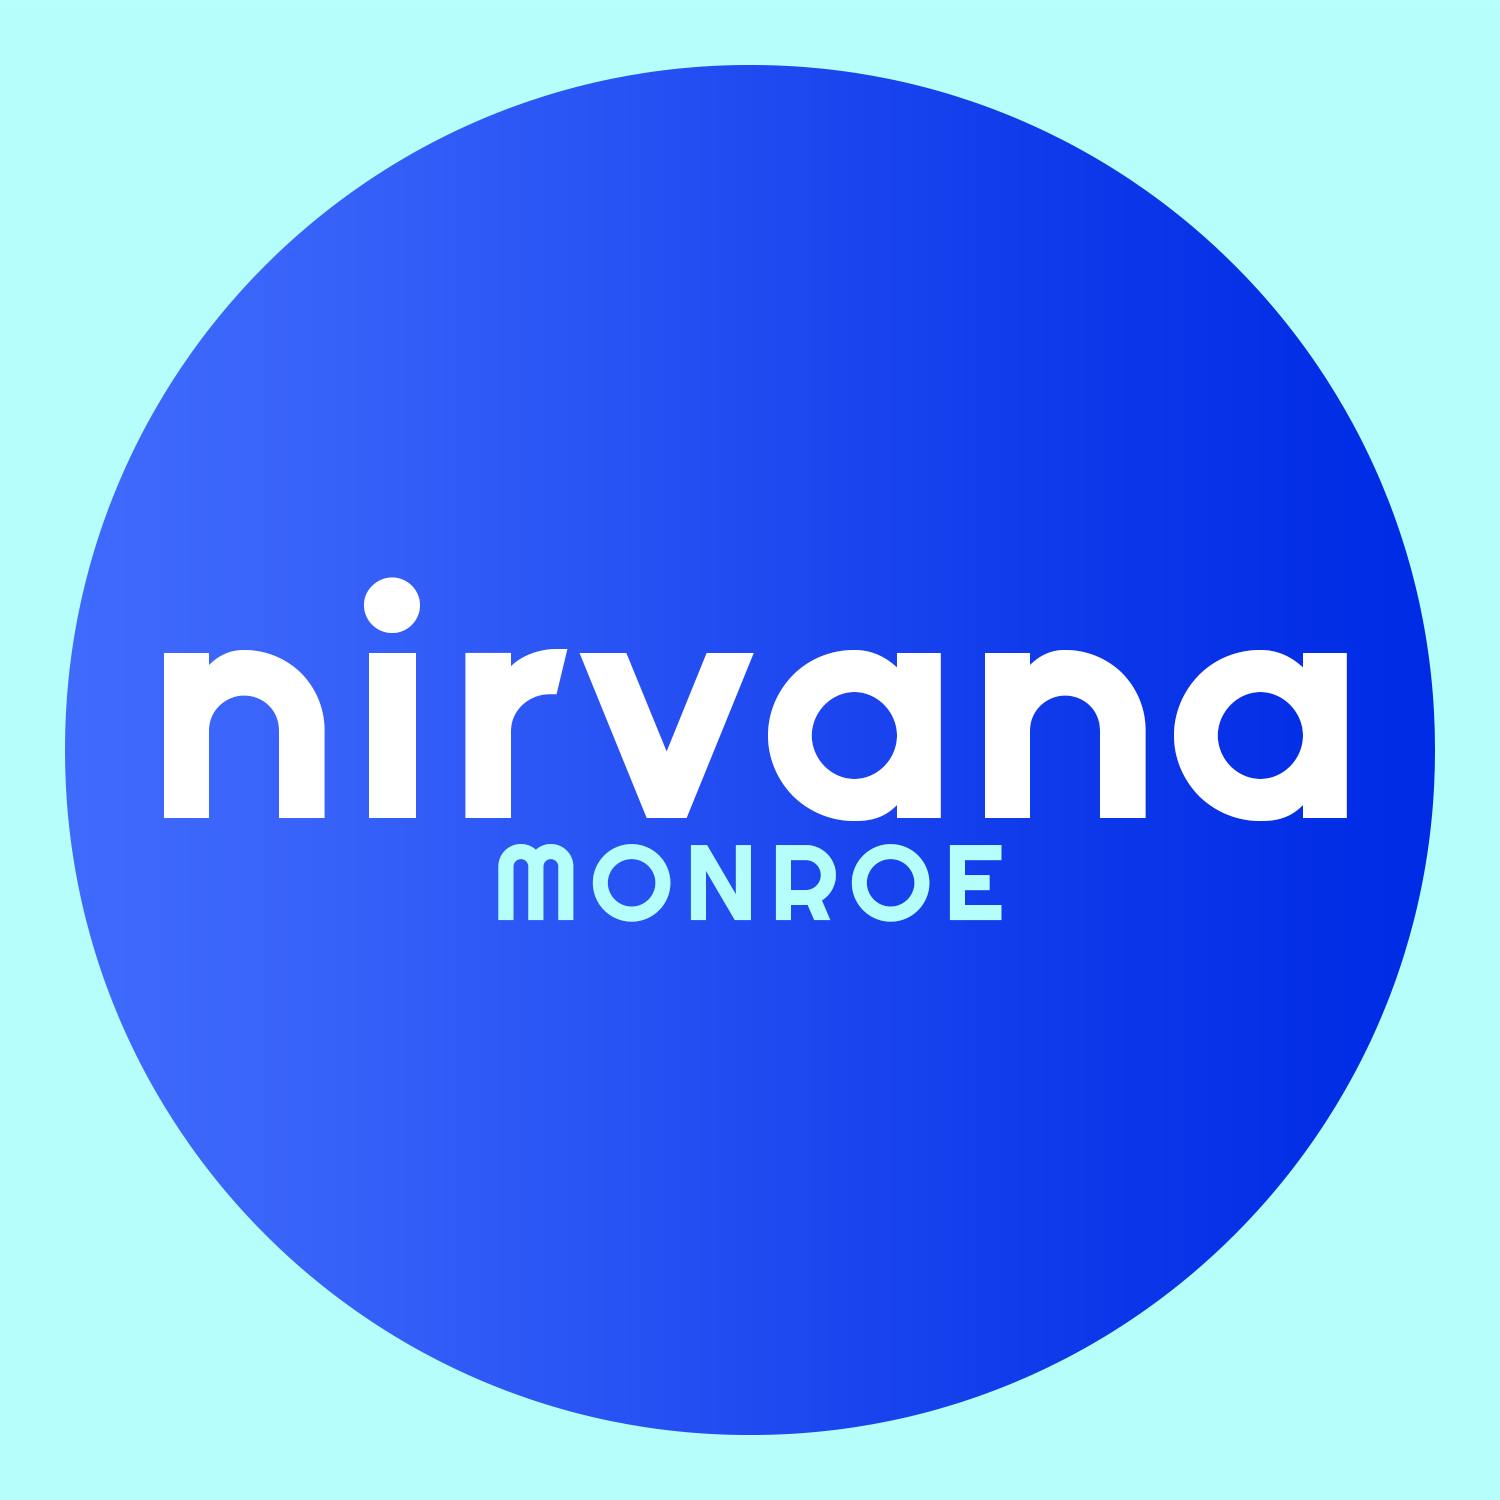 Nirvana Center - Monroe